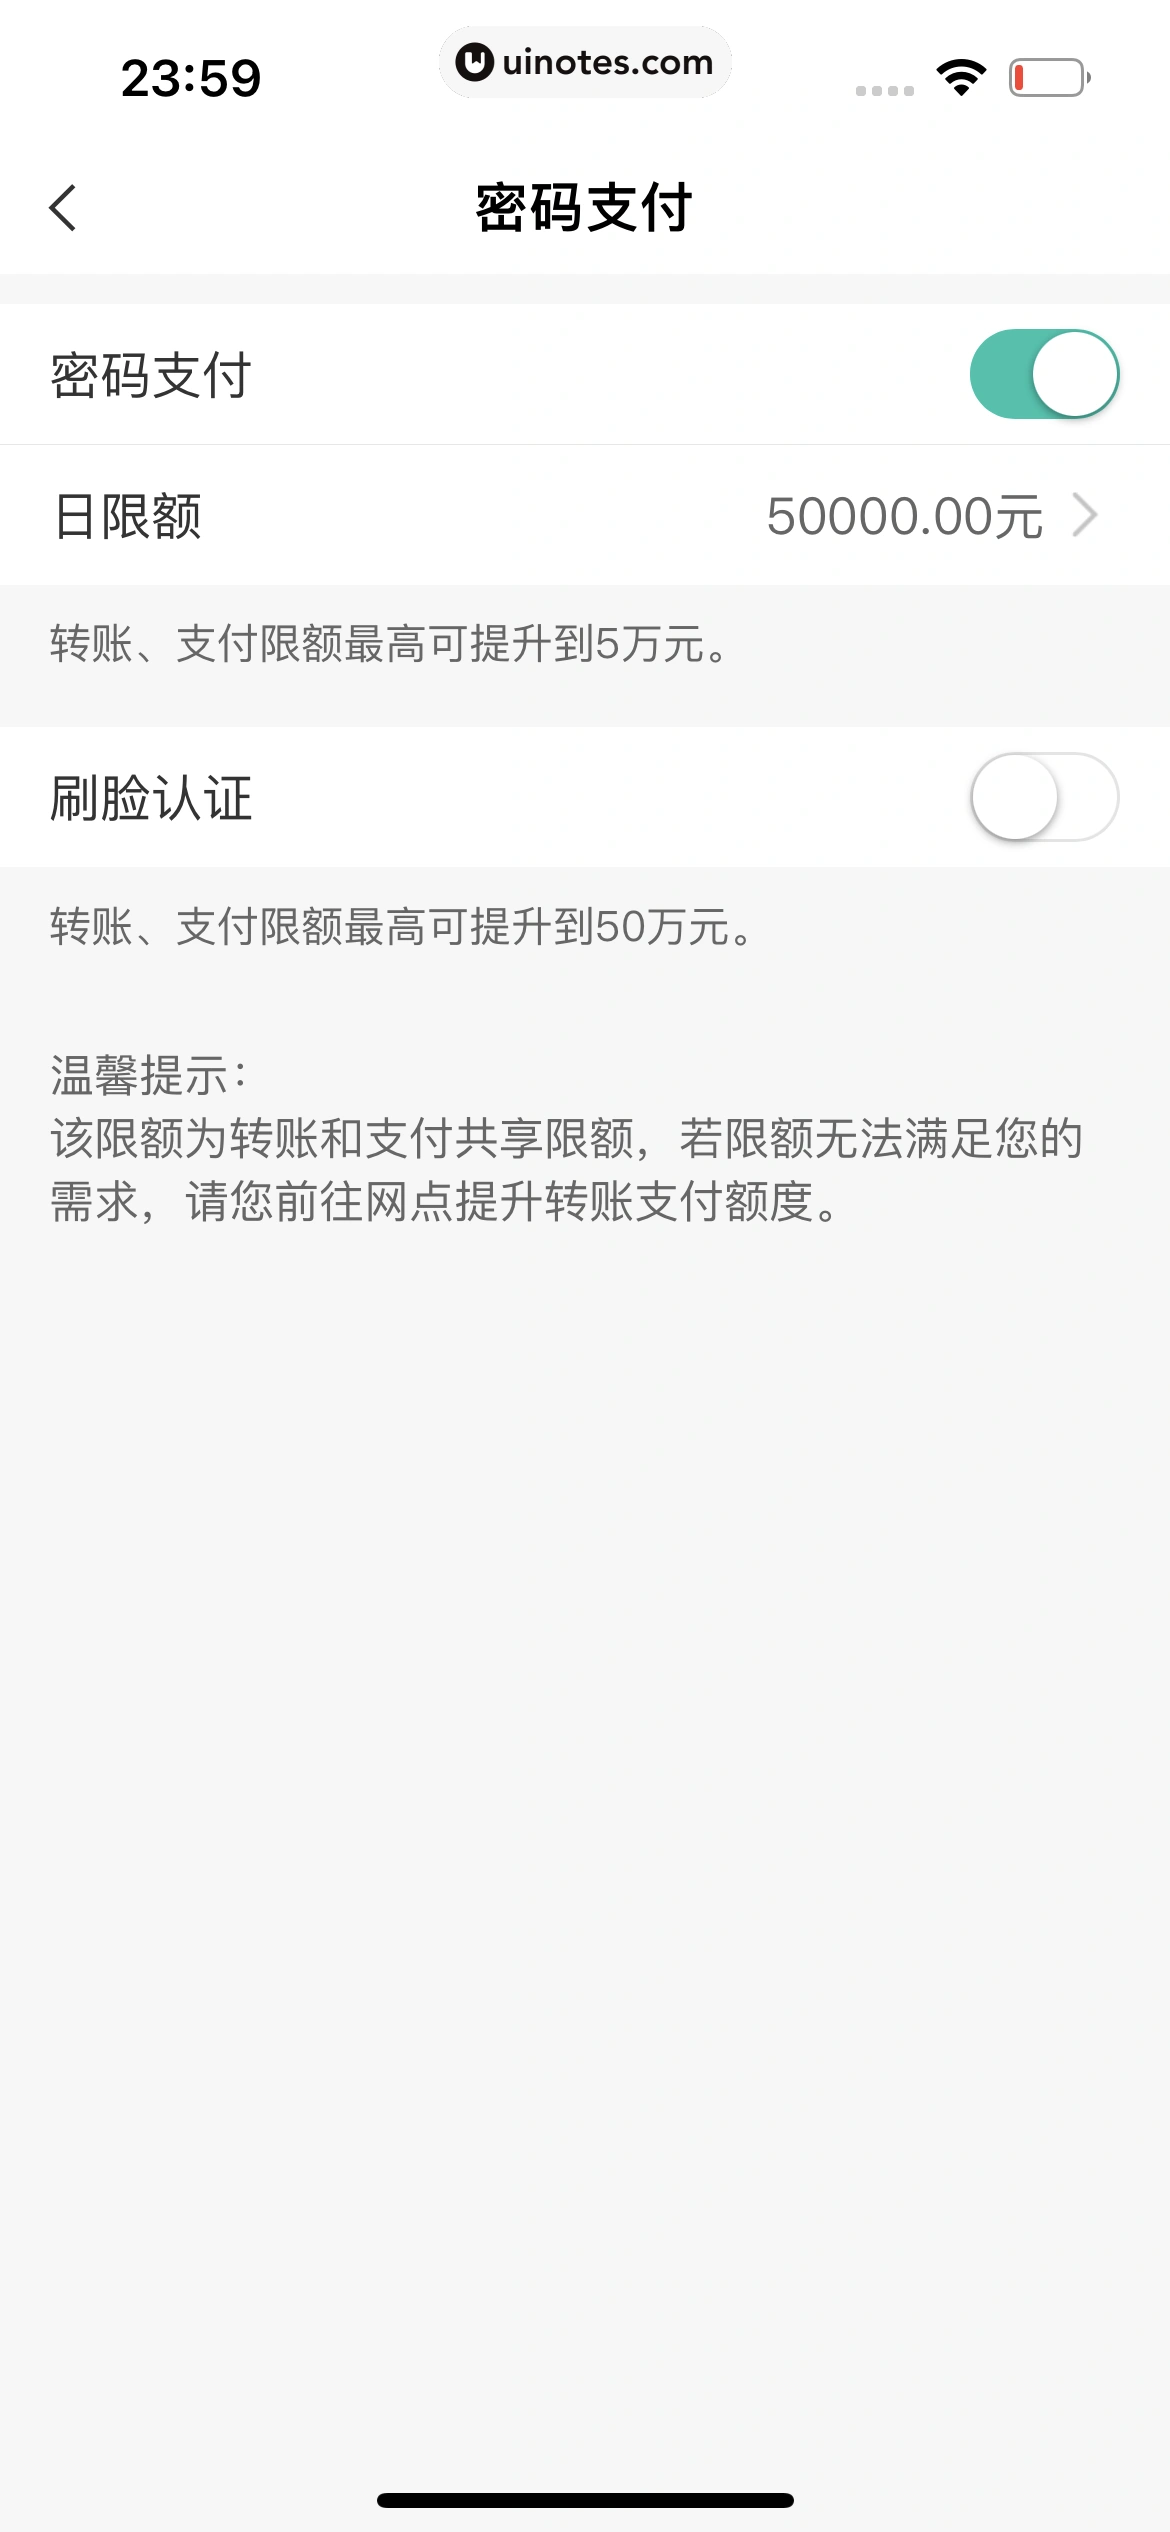 中国农业银行 App 截图 253 - UI Notes